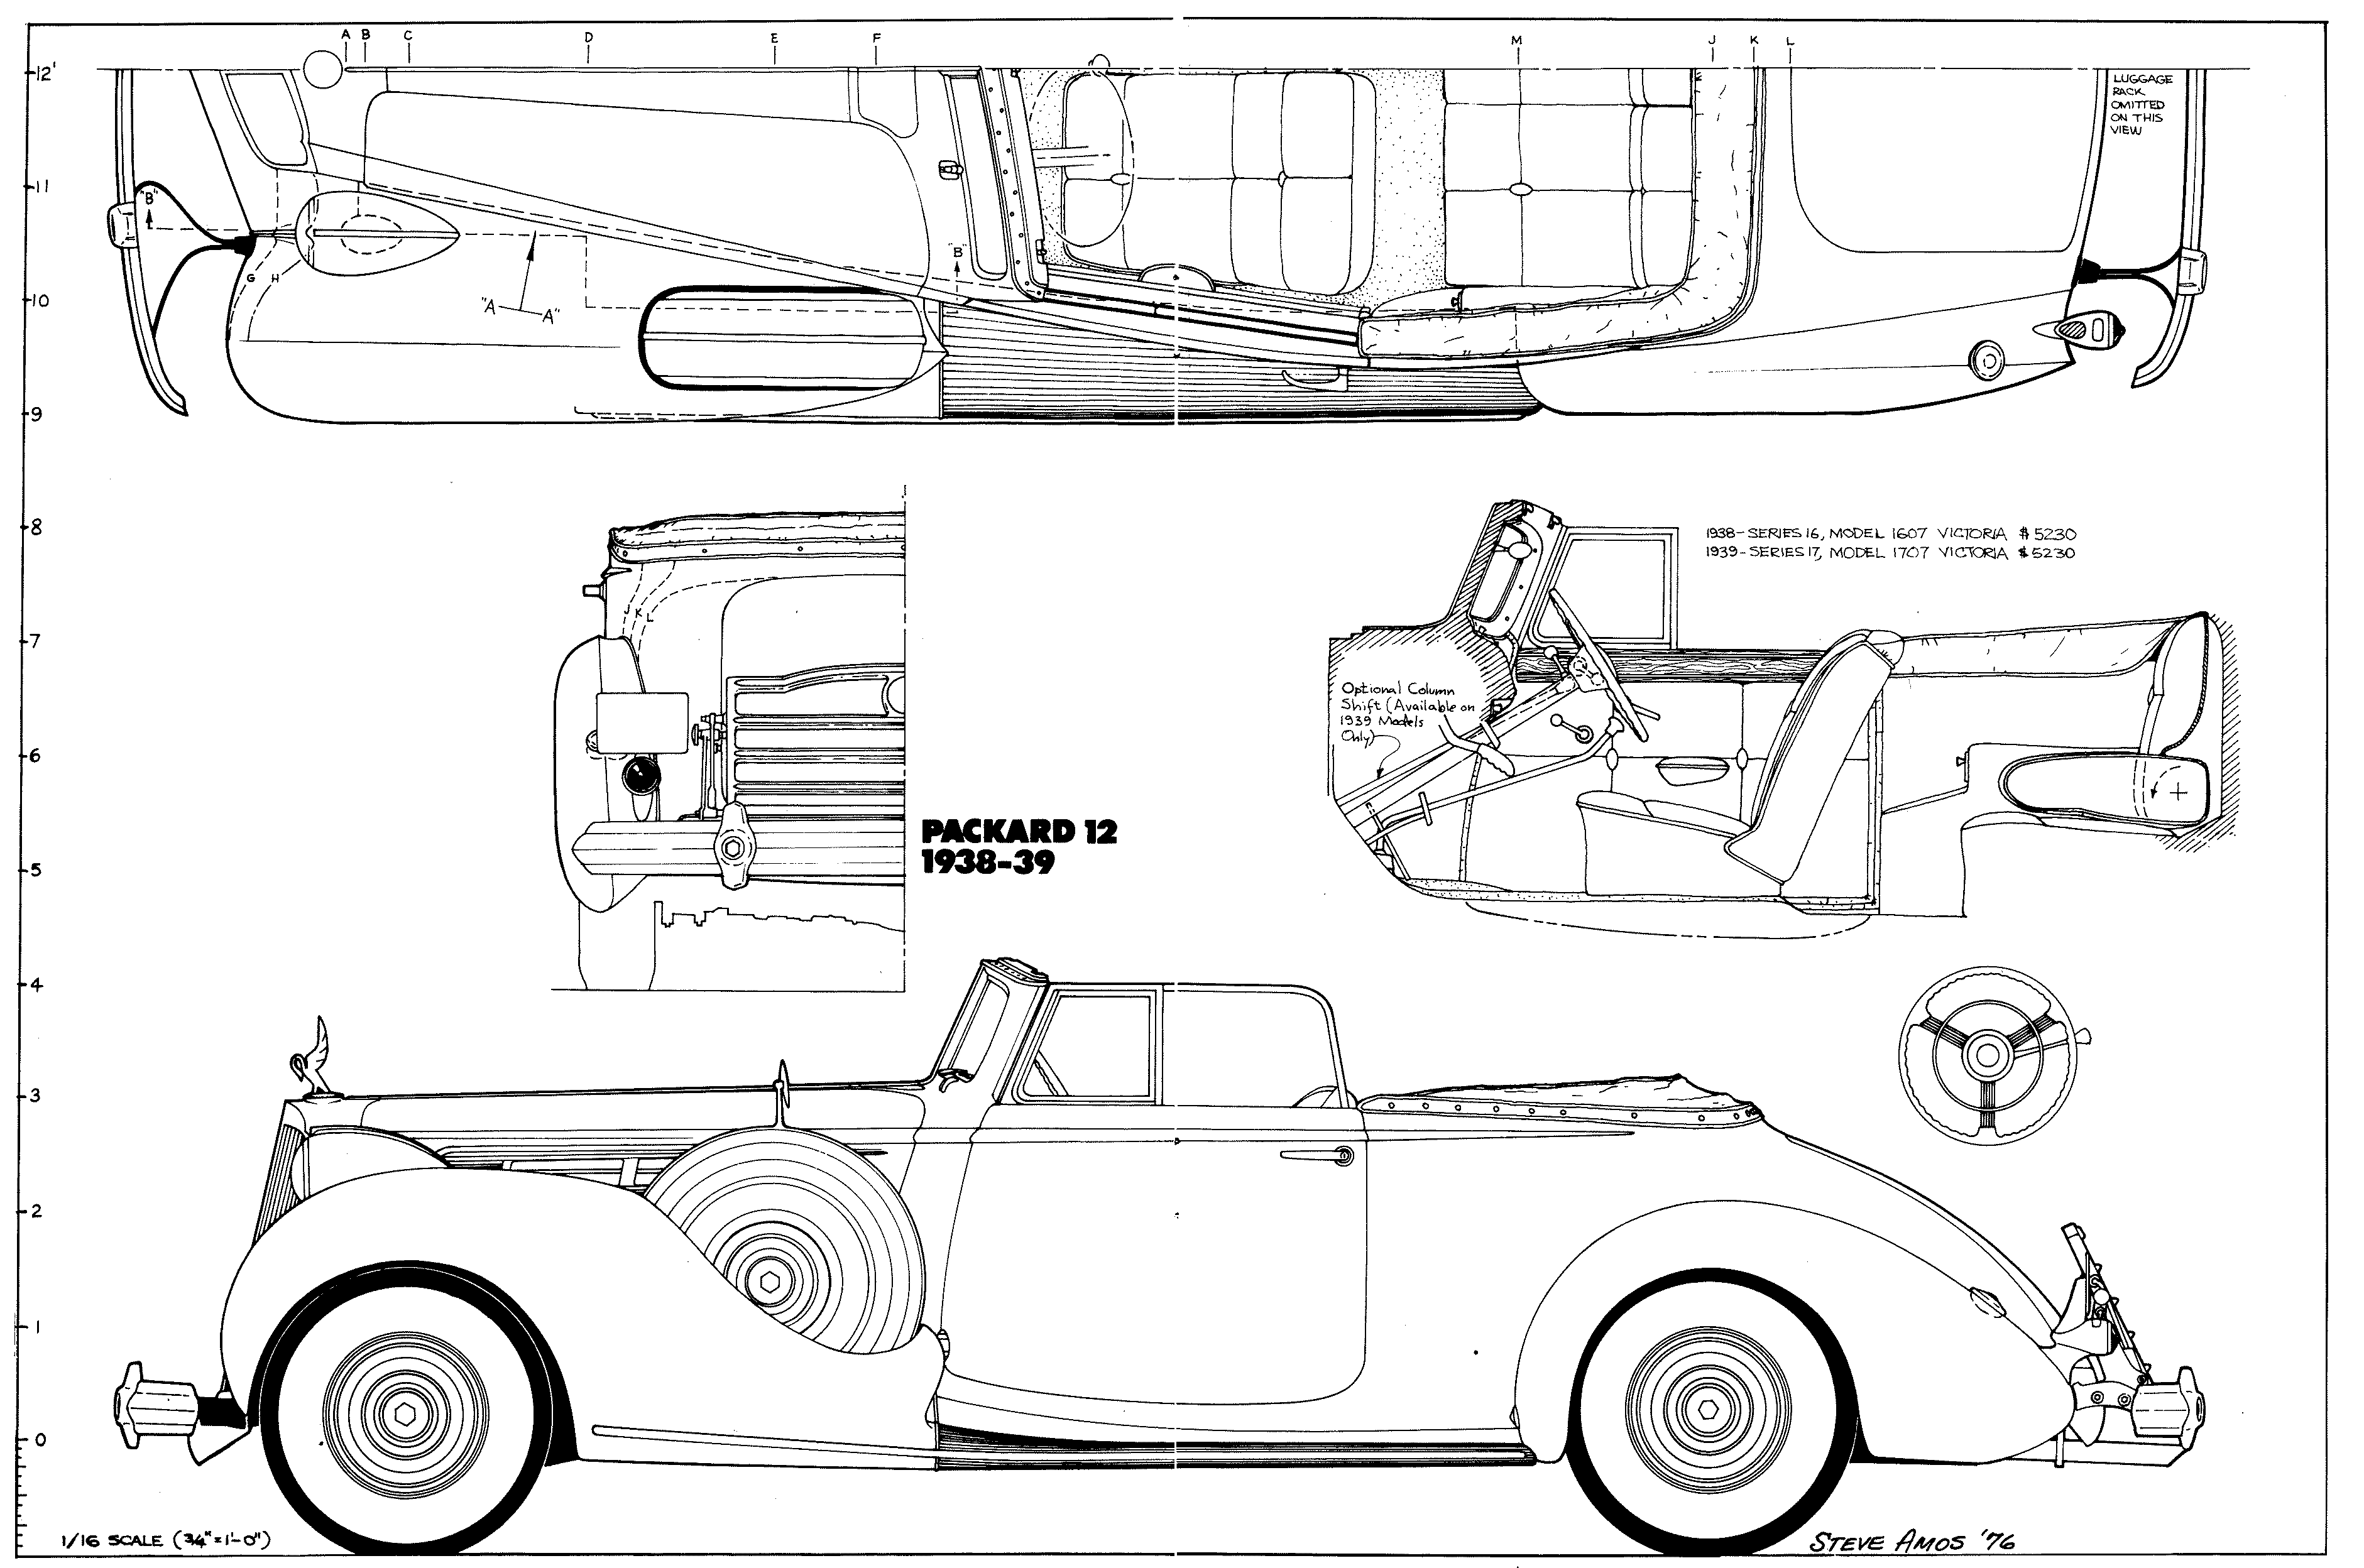 Packard Twelve blueprint